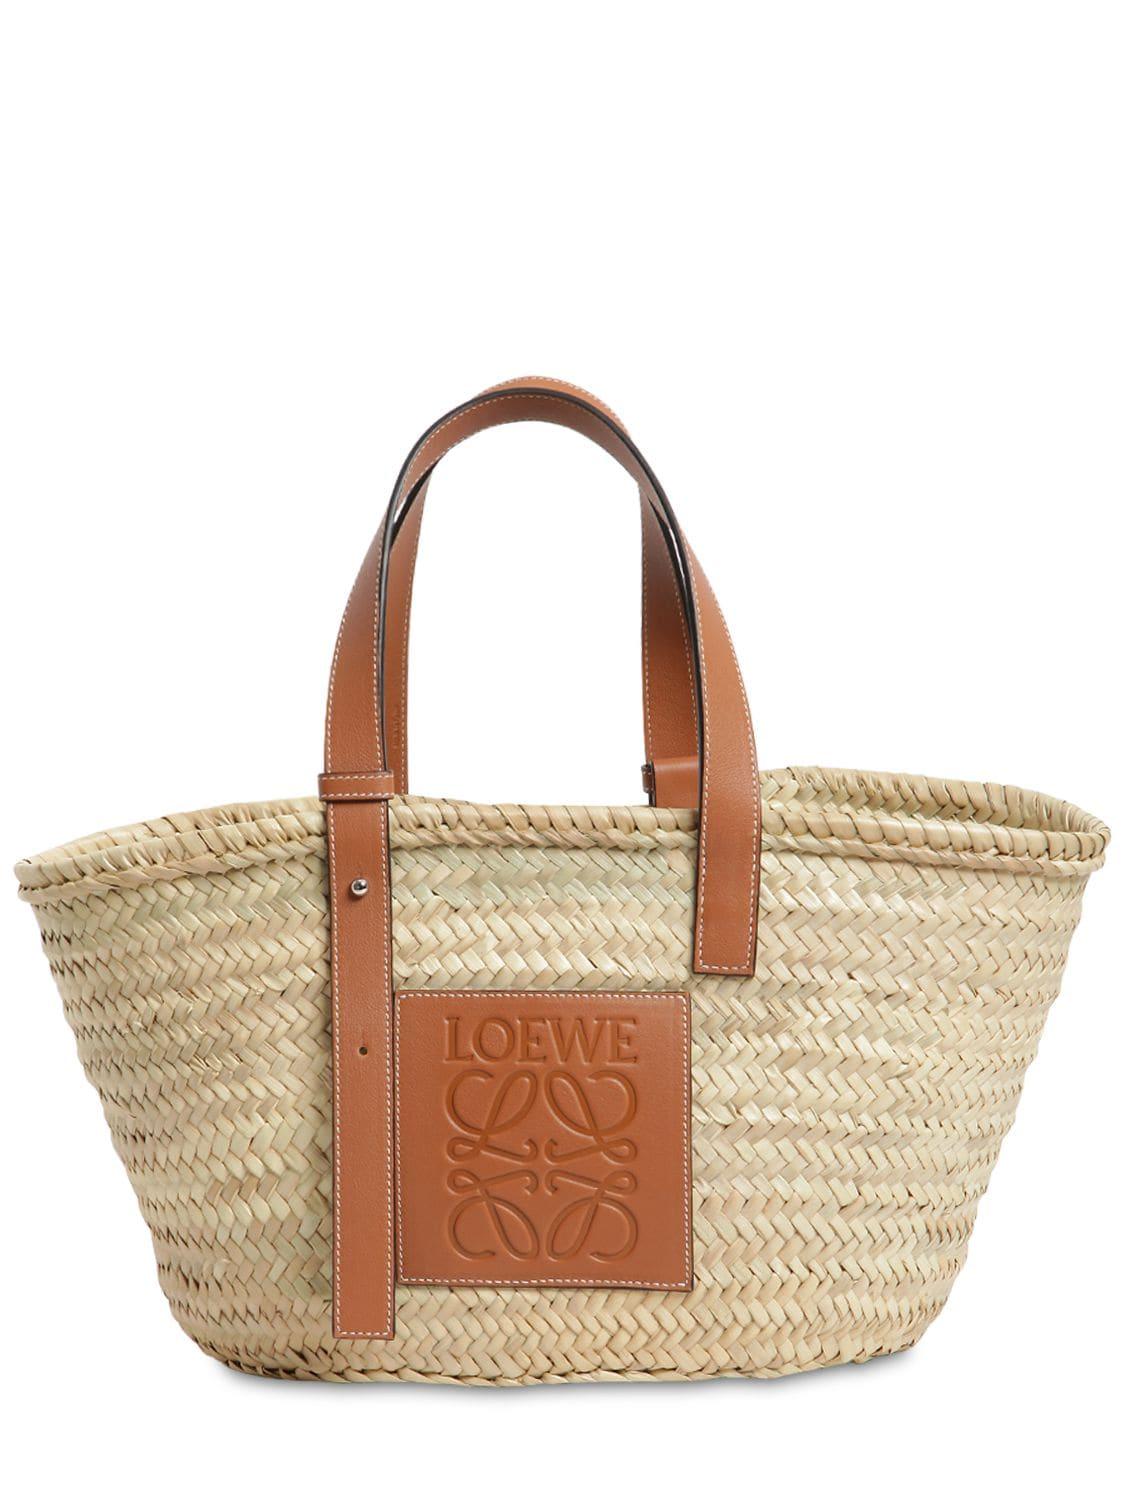 Loewe Medium Leathertrimmed Raffia Tote Bag in Natural/Tan (Natural